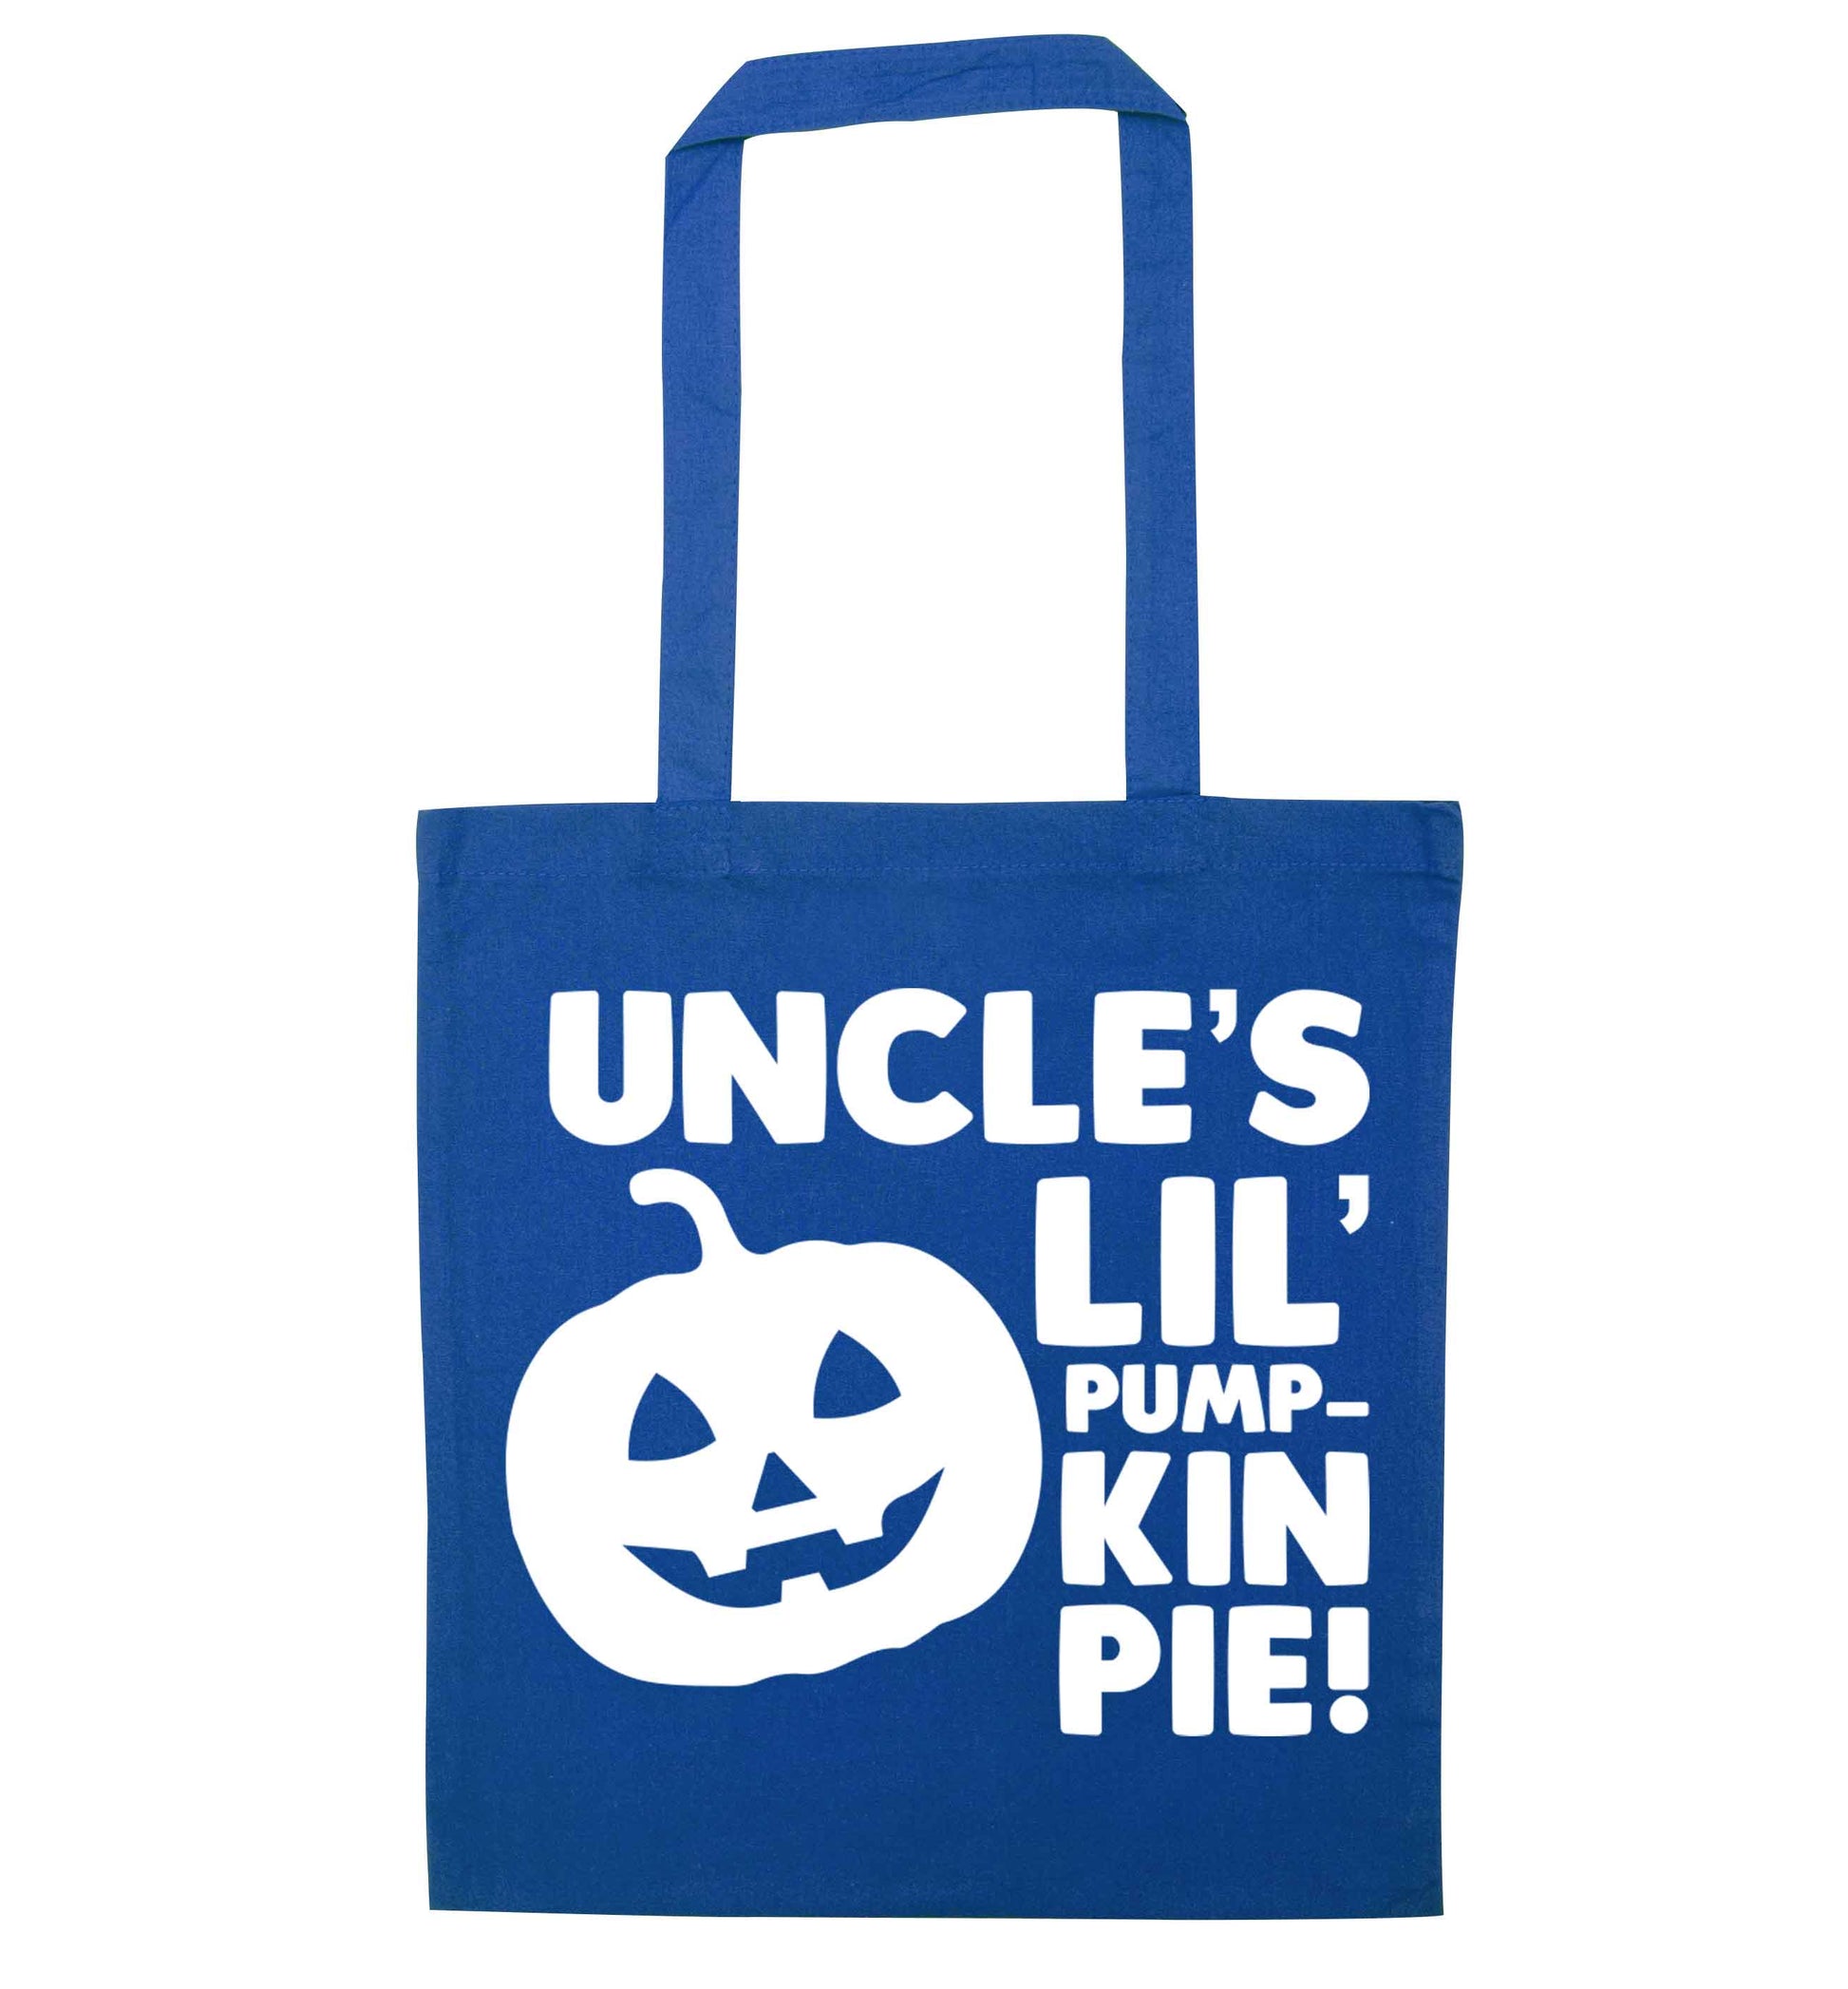 Uncle's lil' pumpkin pie blue tote bag